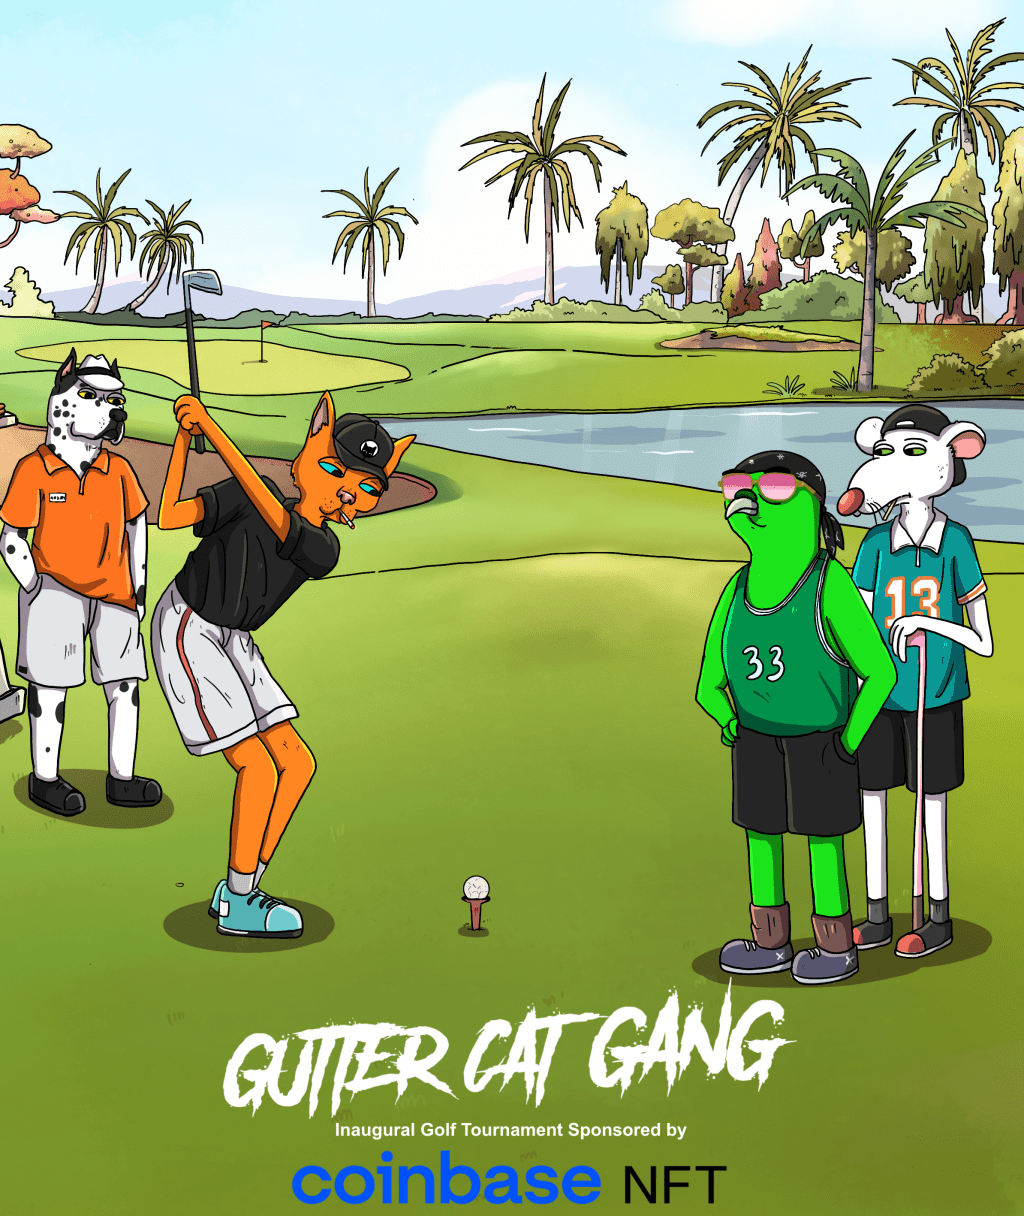 Gutter Cat Gang x Coinbase NFT golf tournament poster